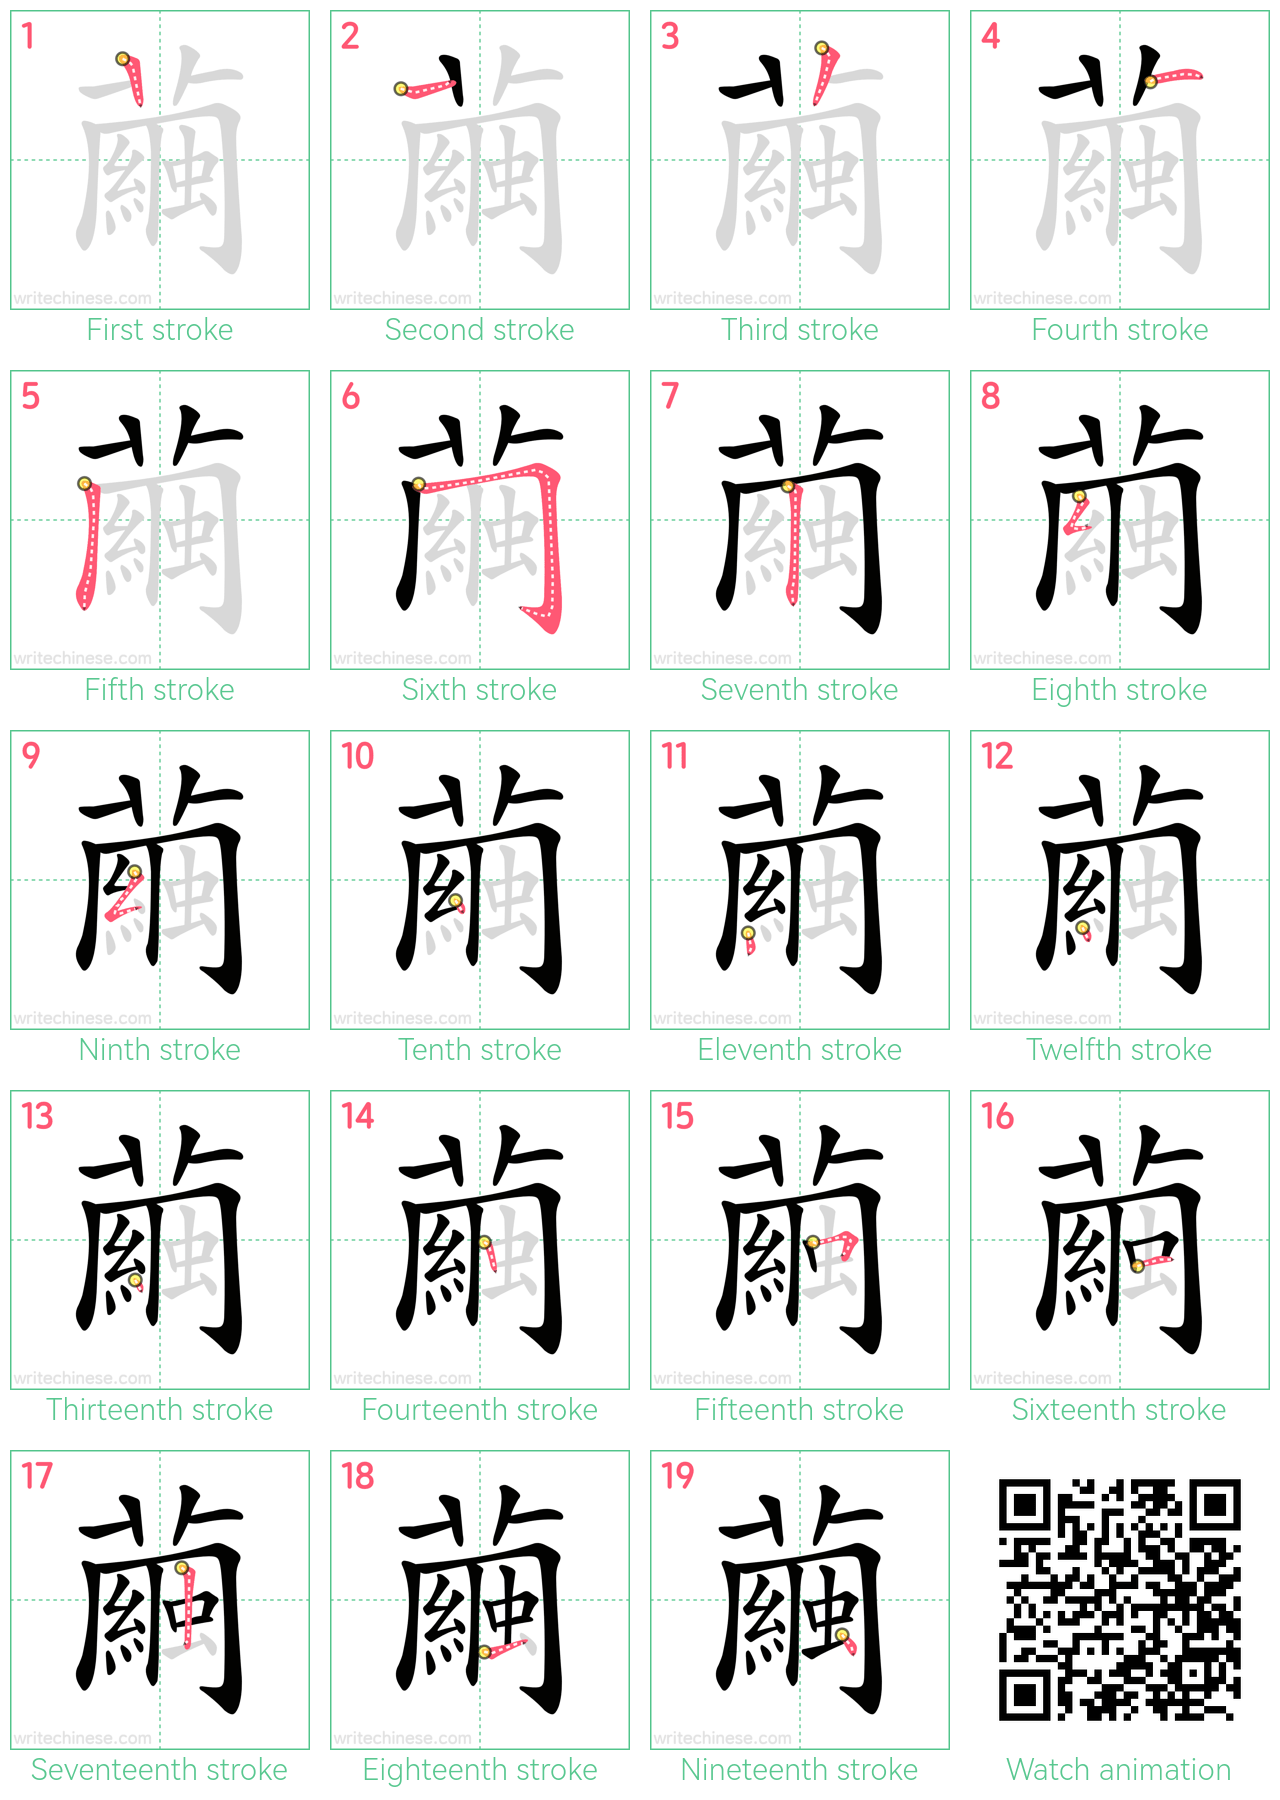 繭 step-by-step stroke order diagrams